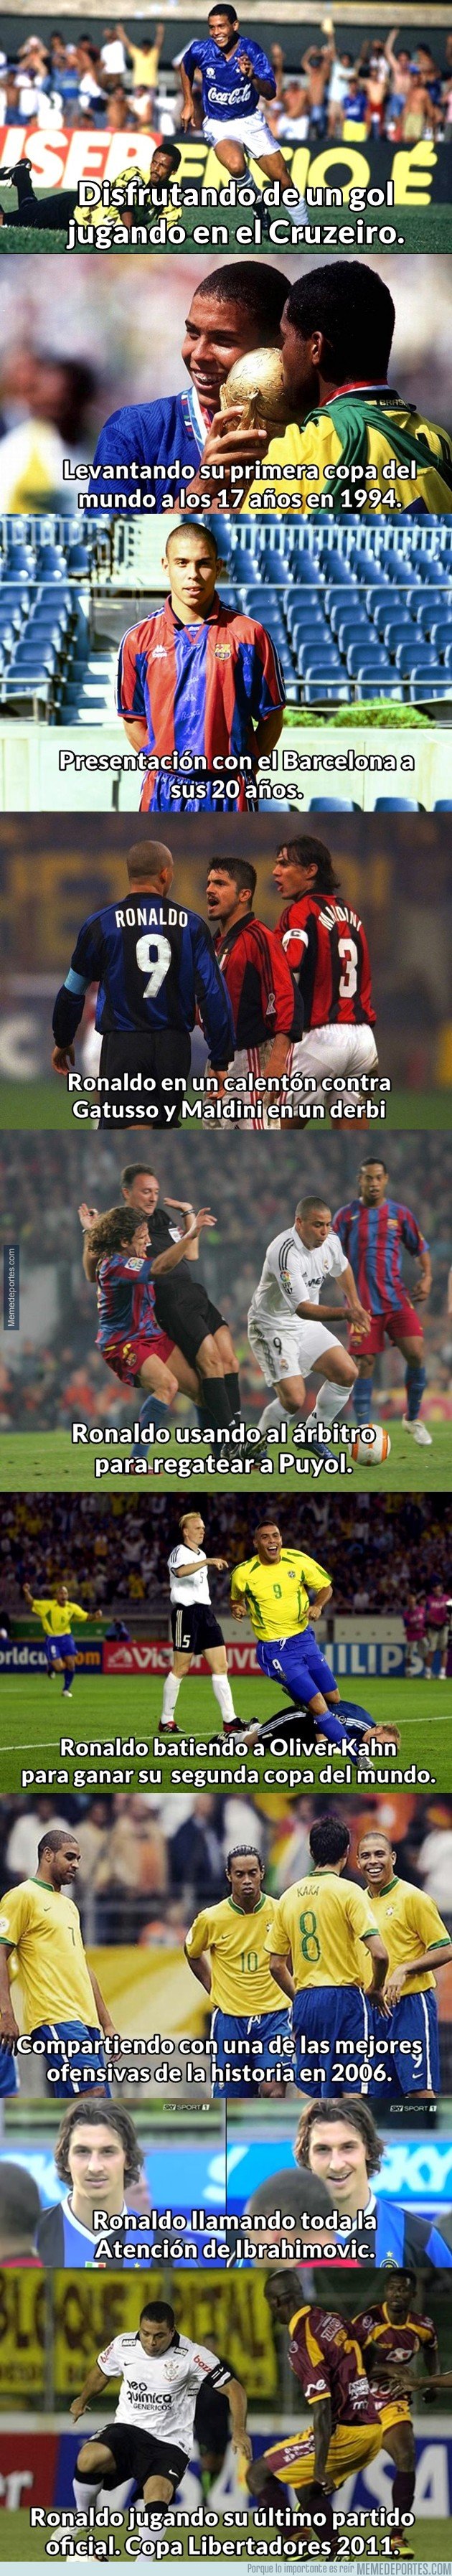 1051129 - 9 momentos futbolísticos del fenómeno Ronaldo